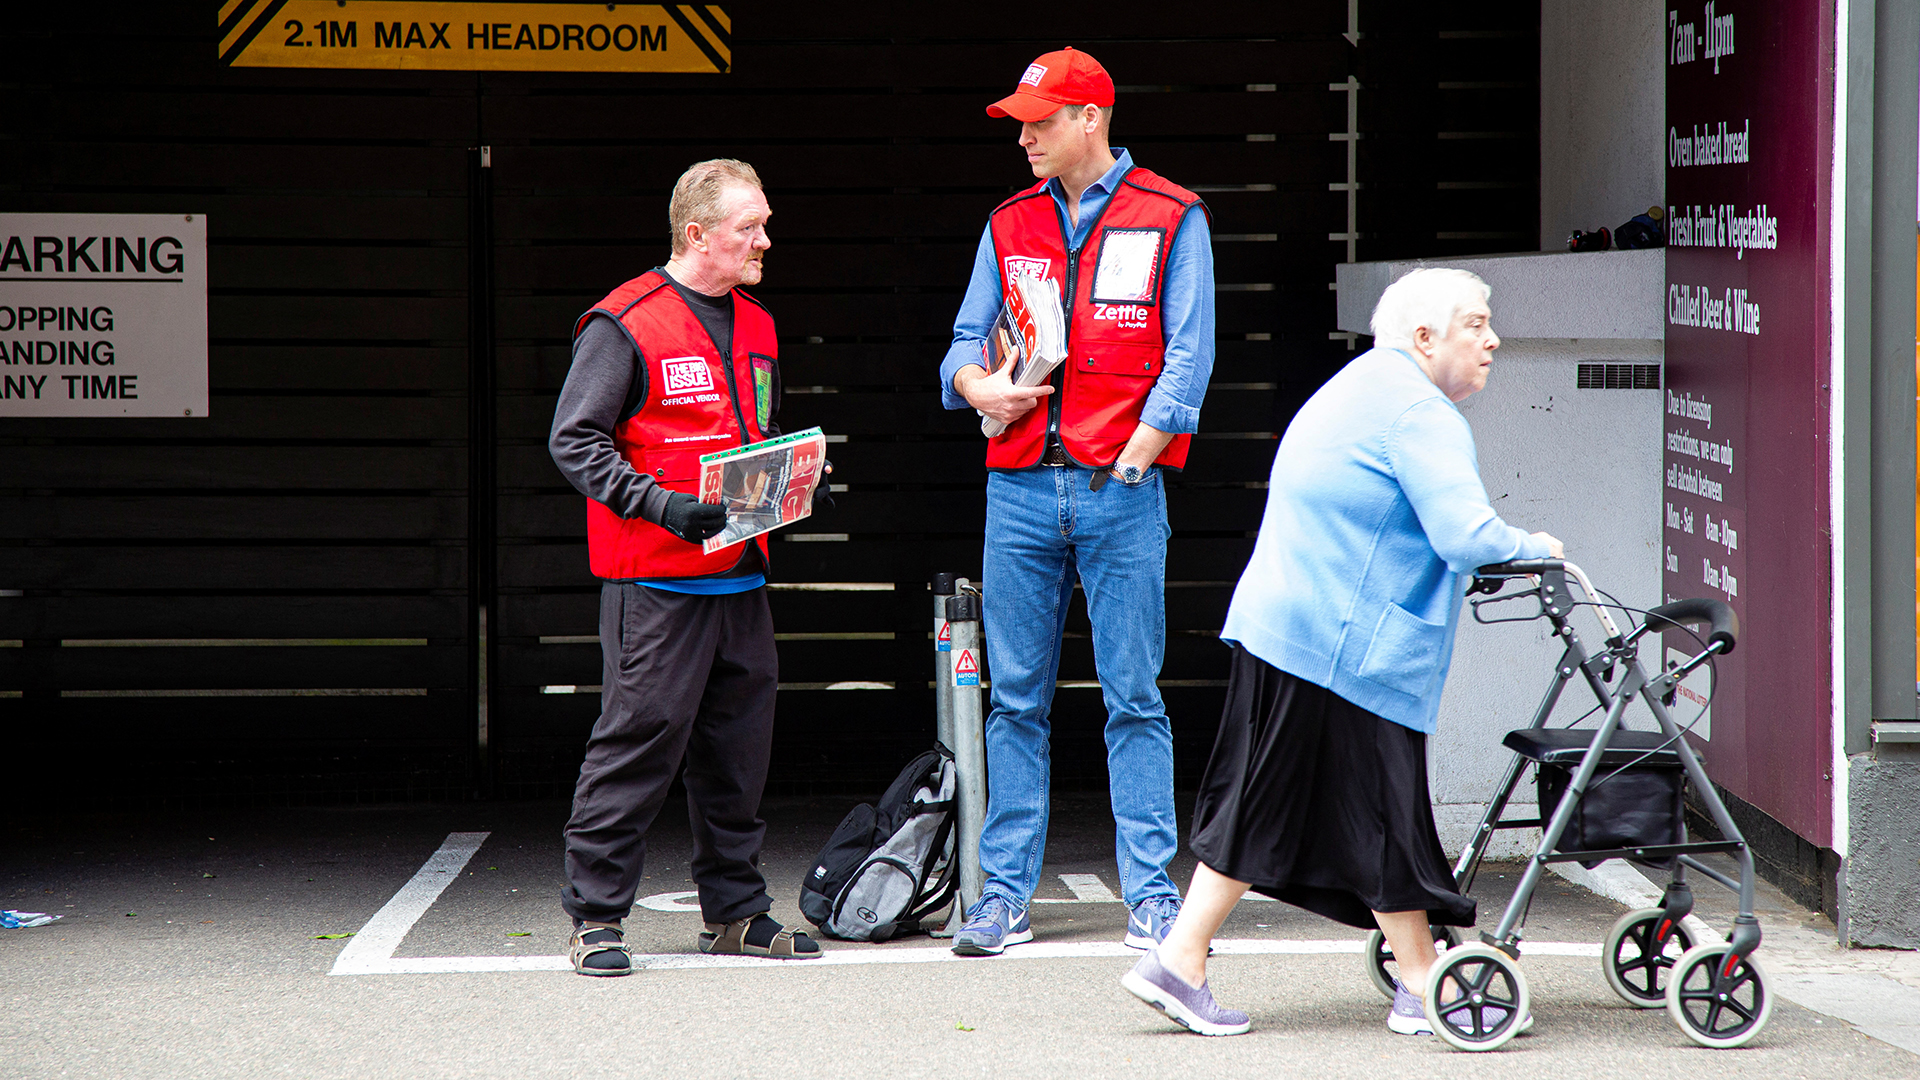 Prinz William verkauft die Obdachlosenzeitung "The Big Issue" auf einer Straße. | Andy Parsons/The Big Issue/Handout via REUTERS